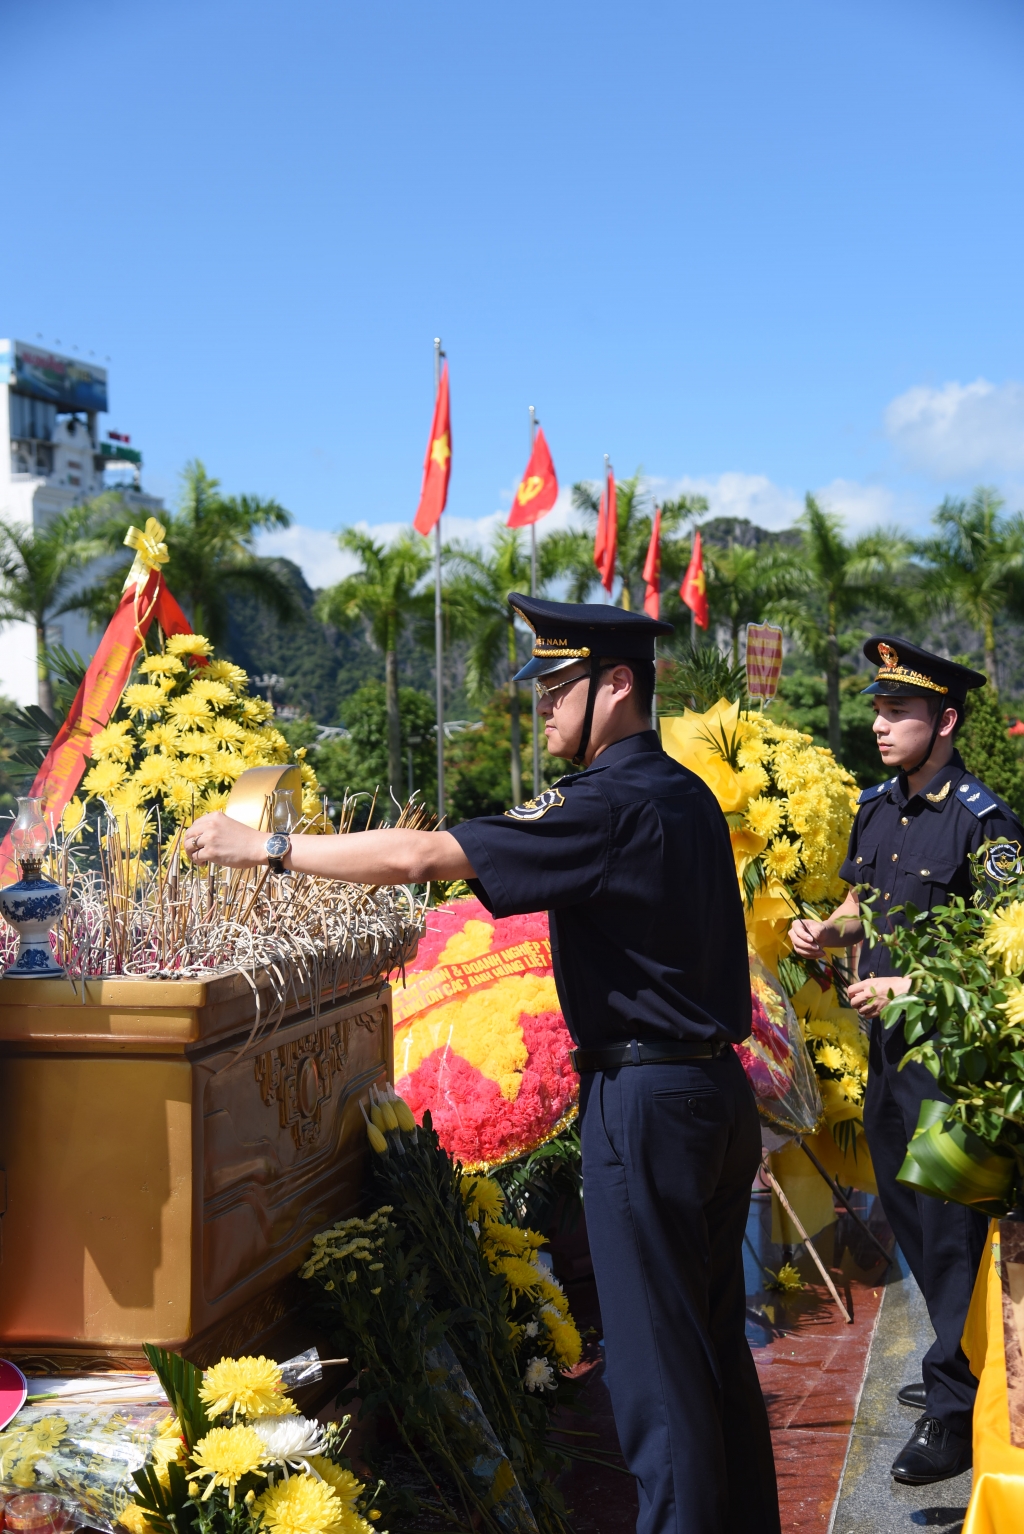 Thanh niên Hải quan tặng 30 phần quà cho gia đình chính sách tại Quảng Ninh